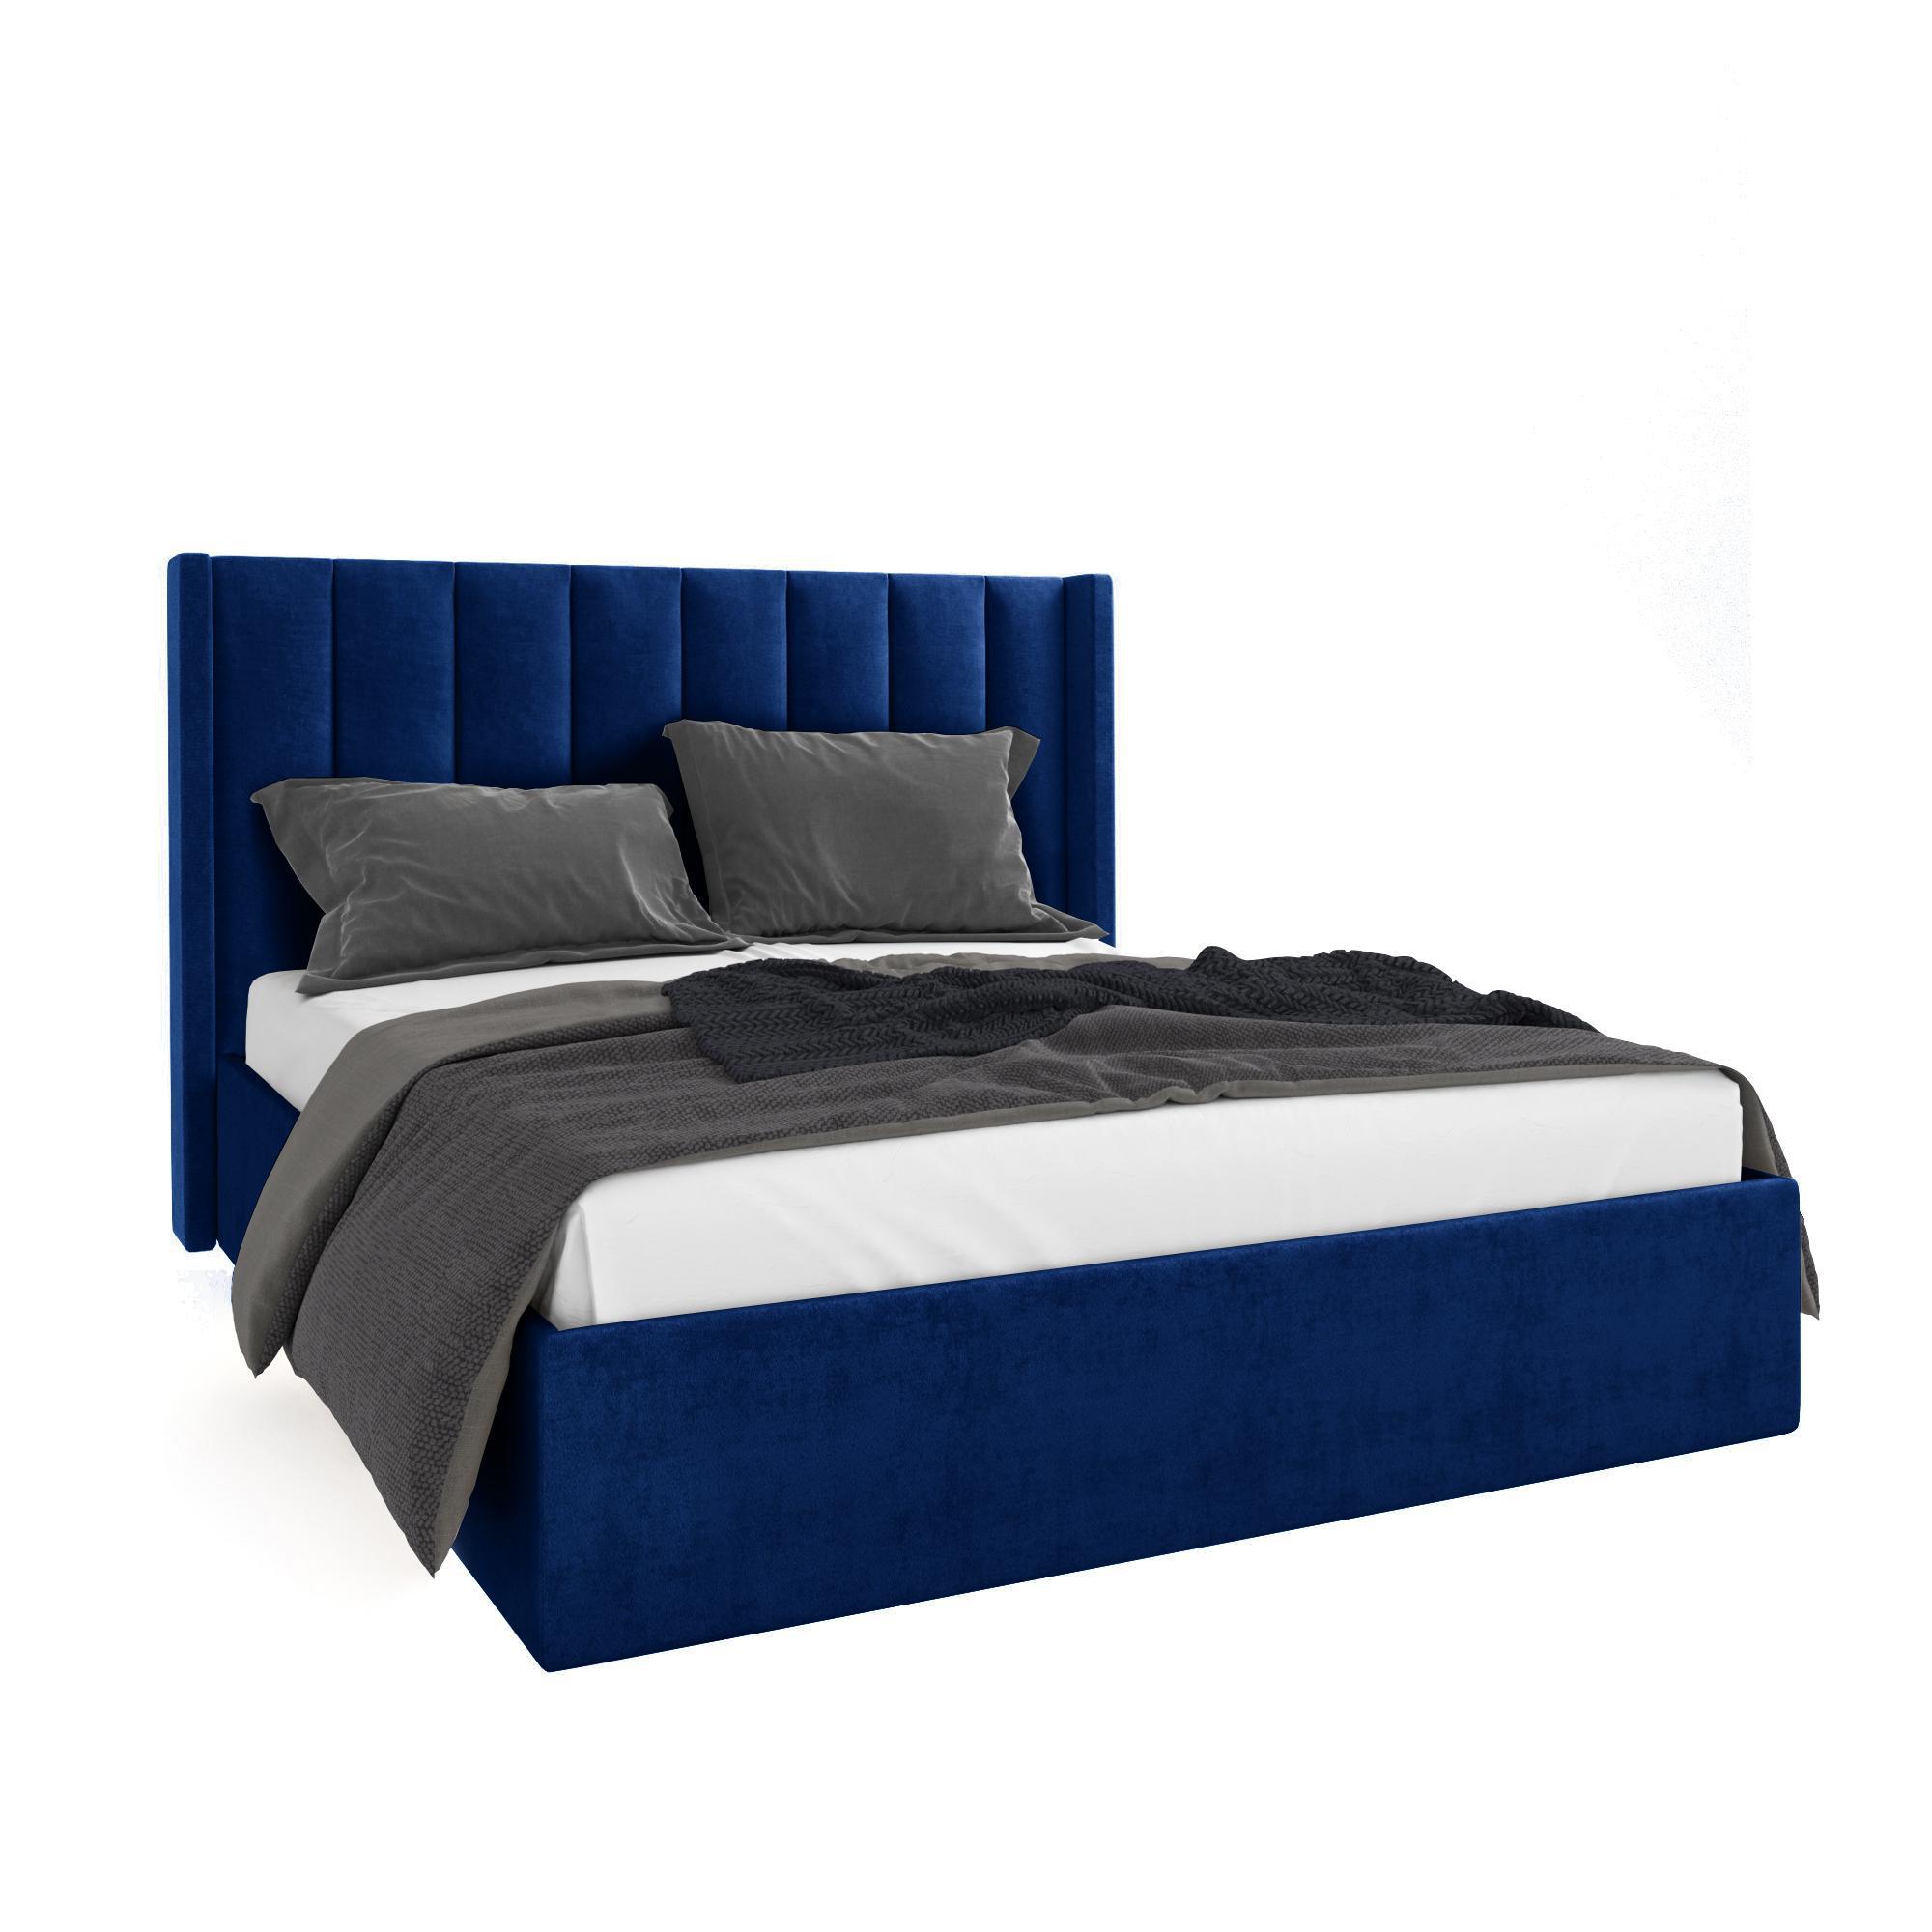 Кровать Жаклиз синяя 180х200 изображение товара